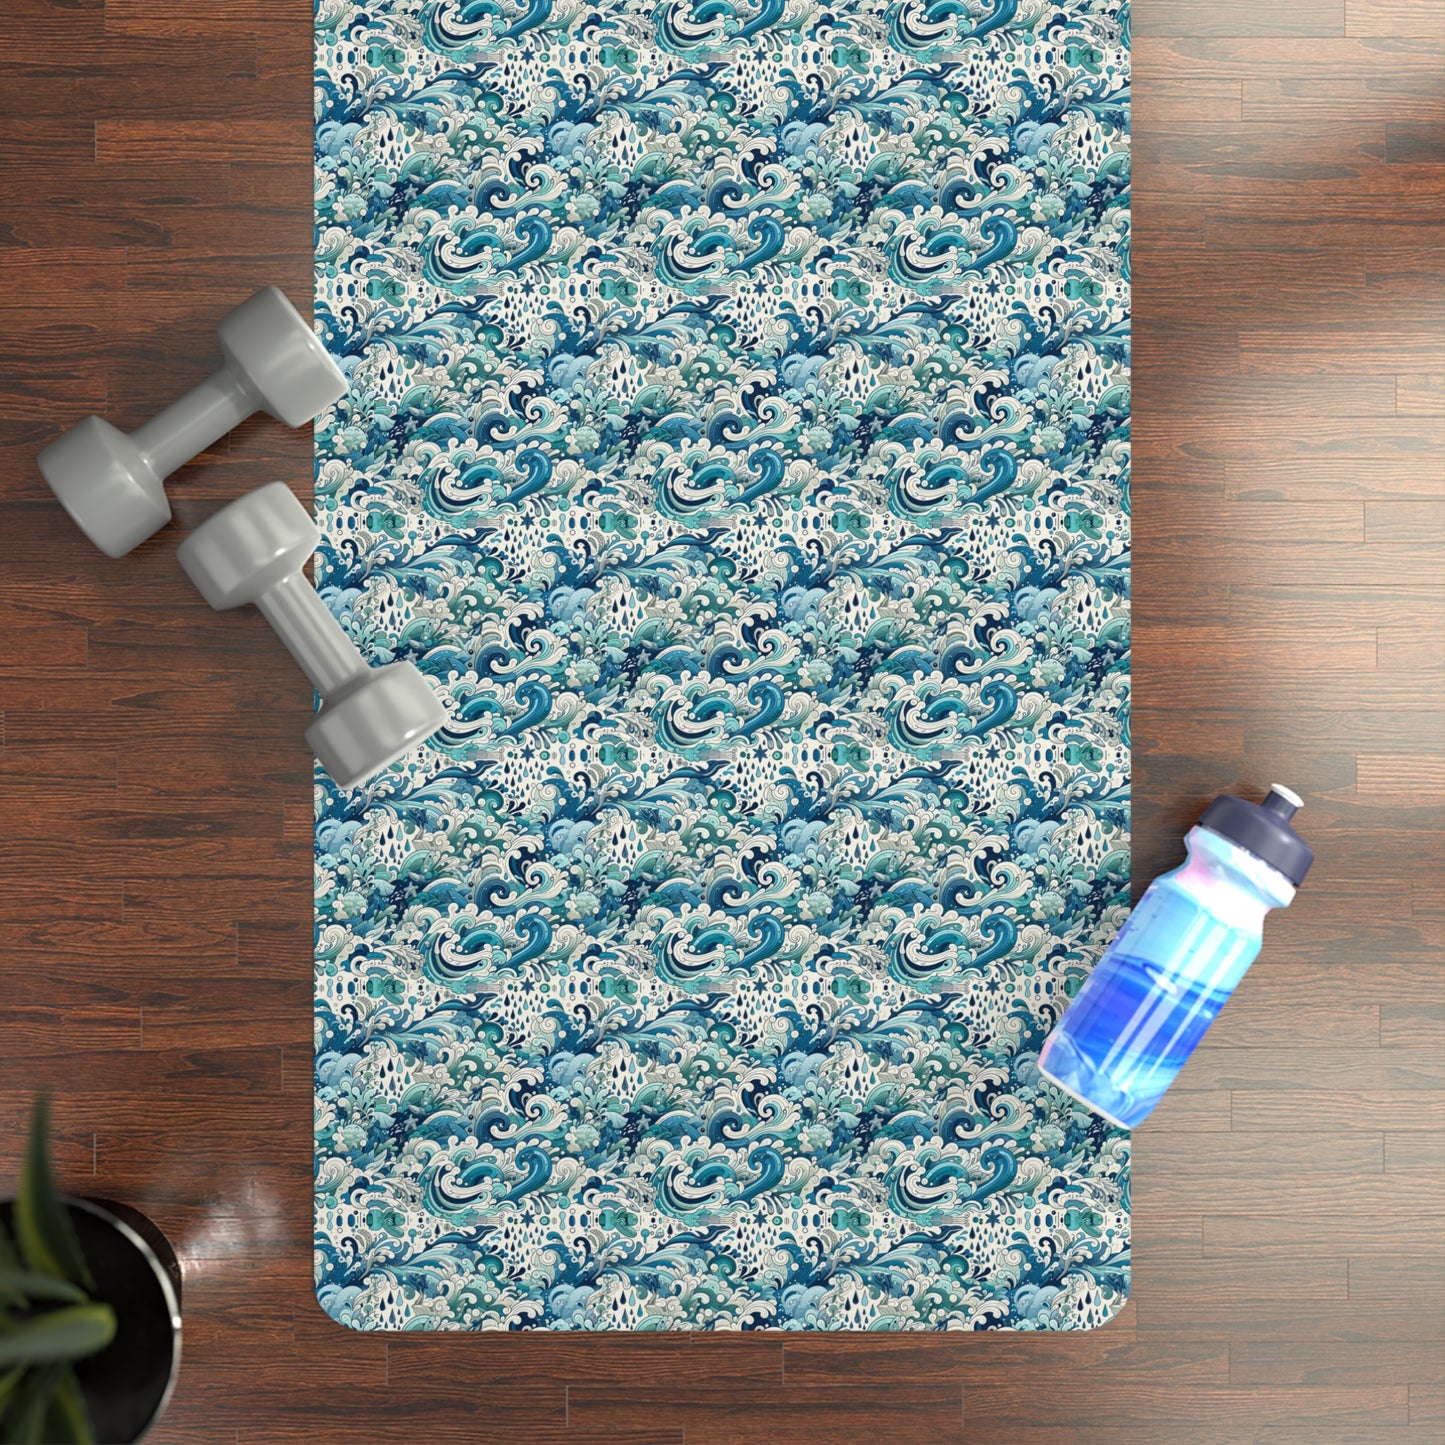 Aqua Serenity Yoga Mat - Soothing Water-Inspired Microfiber Design